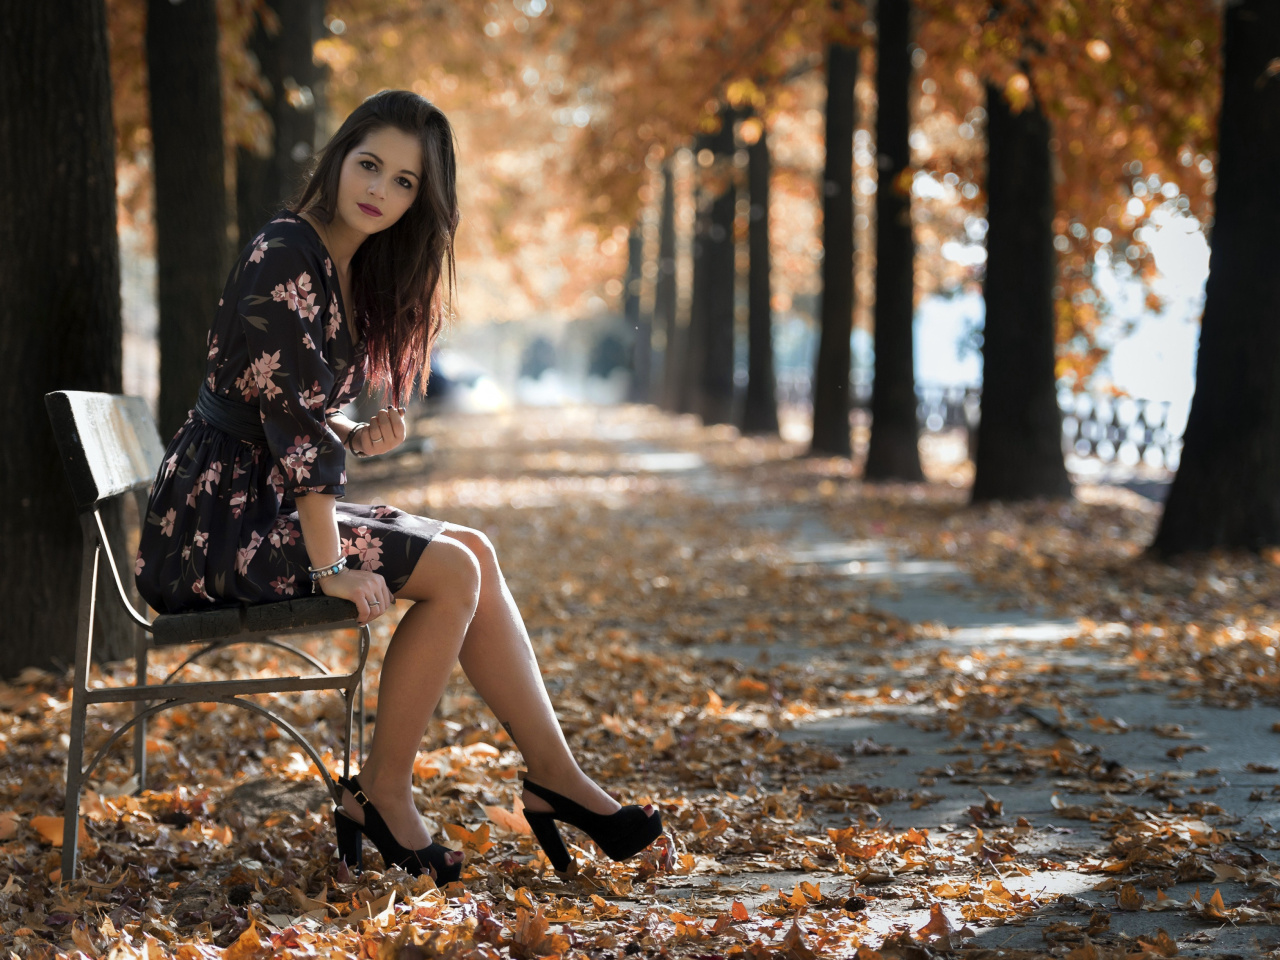 Caucasian joy girl in autumn park screenshot #1 1280x960